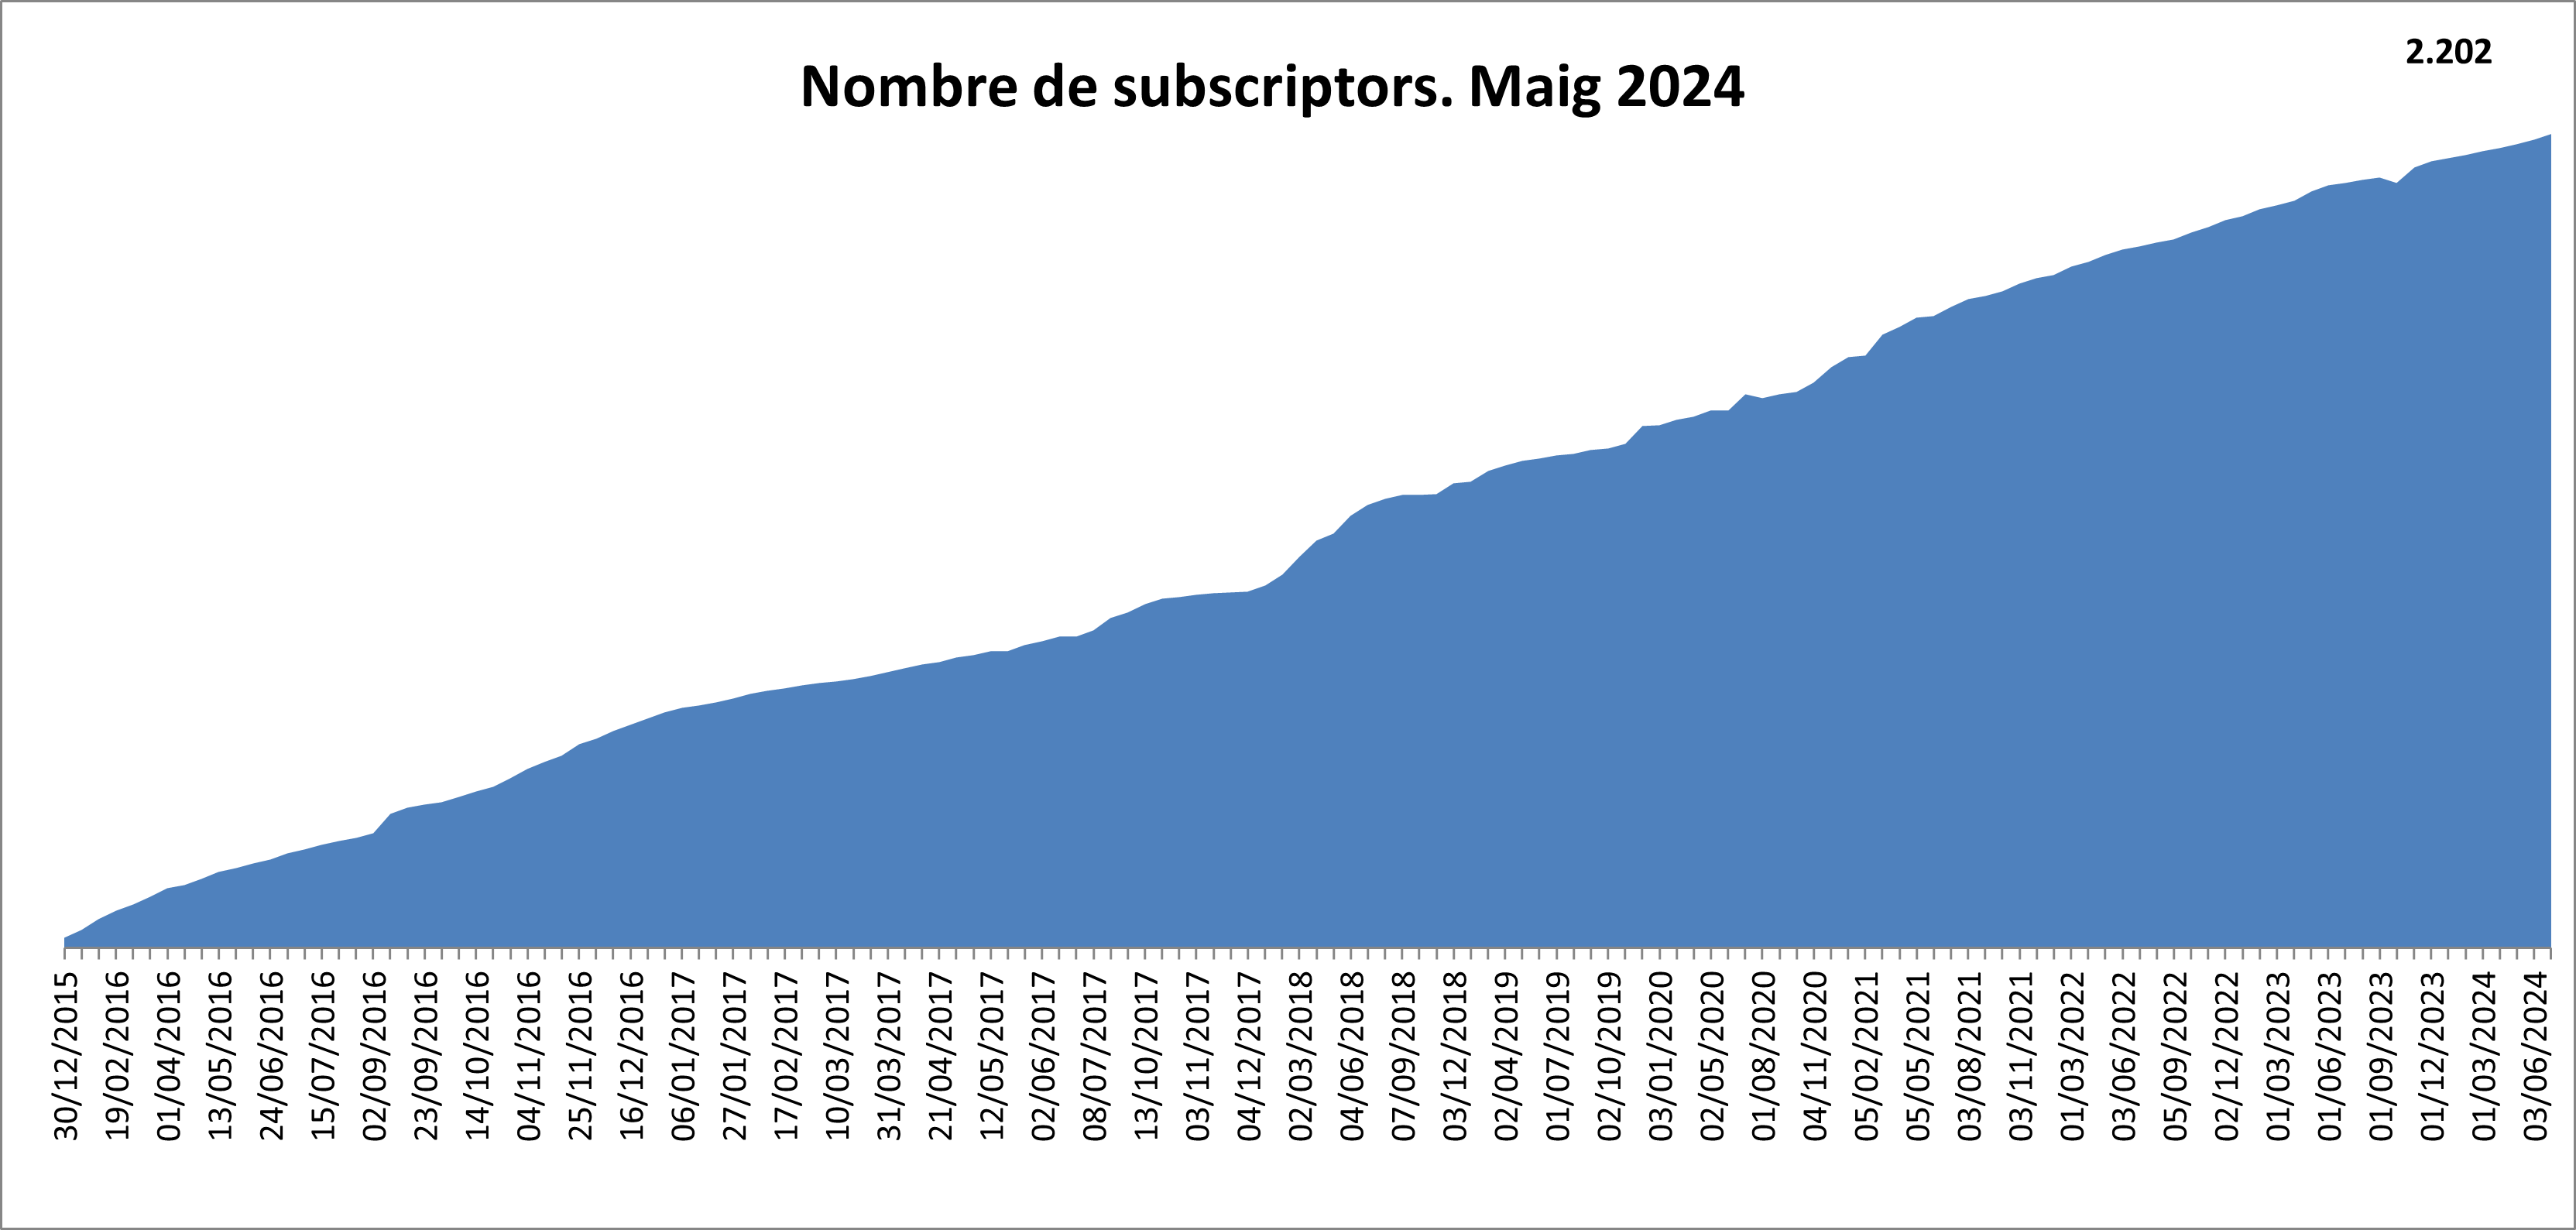  Nombre de subscriptors 2008. Gener 2023.